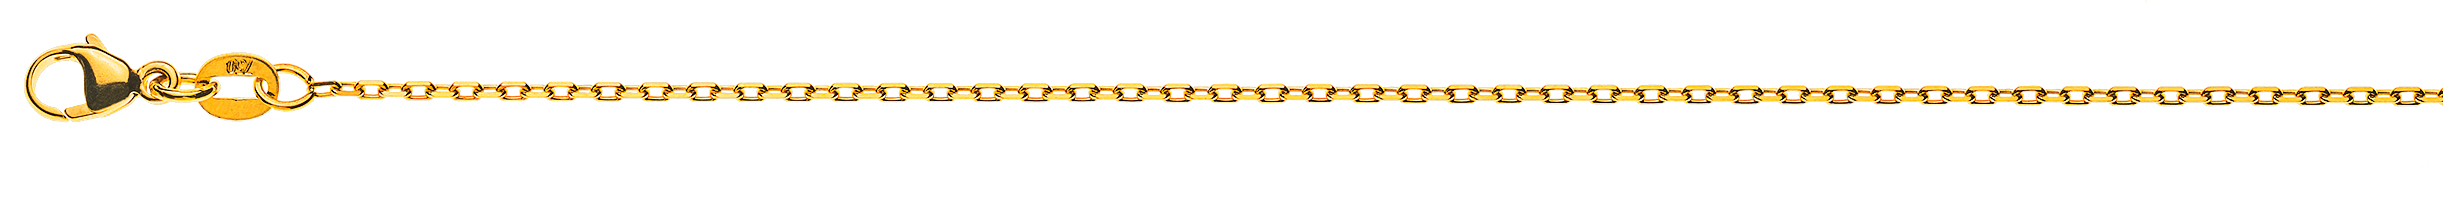 AURONOS Prestige Halskette Gelbgold 18K 4-Fach geschliffen Anker 55cm 1.4mm